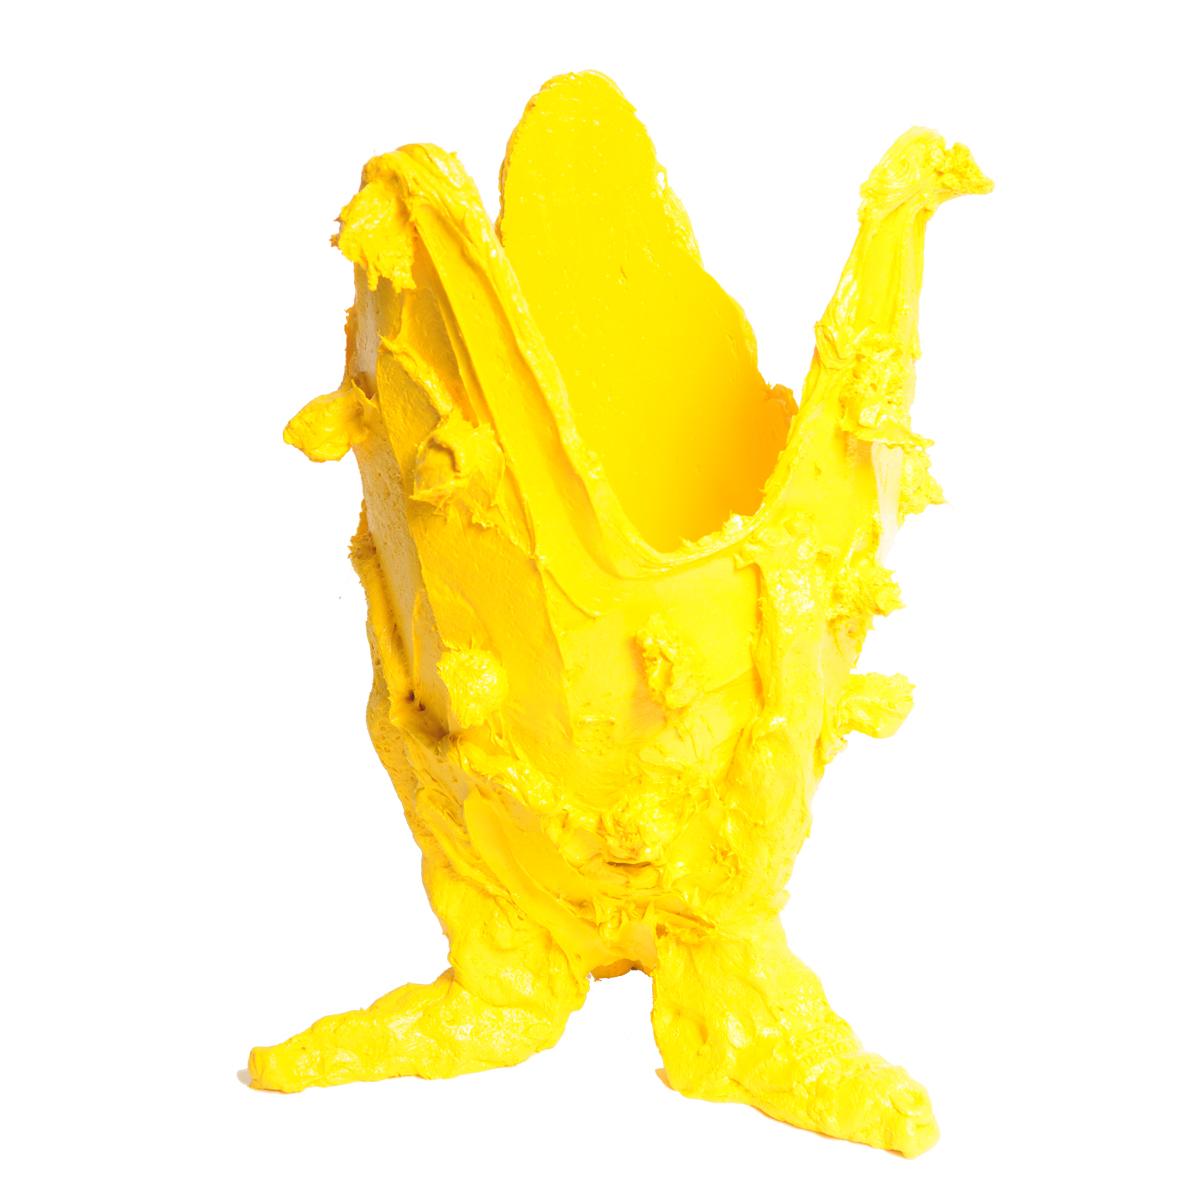 Vase spécial citron, jaune.
Vase en résine souple conçu par Gaetano Pesce en 1995 pour la collection Fish Design.

Mesures : I.L.A.A. 22cm x H 36cm

Autres tailles disponibles.
Vase en résine souple conçu par Gaetano Pesce en 1995 pour la